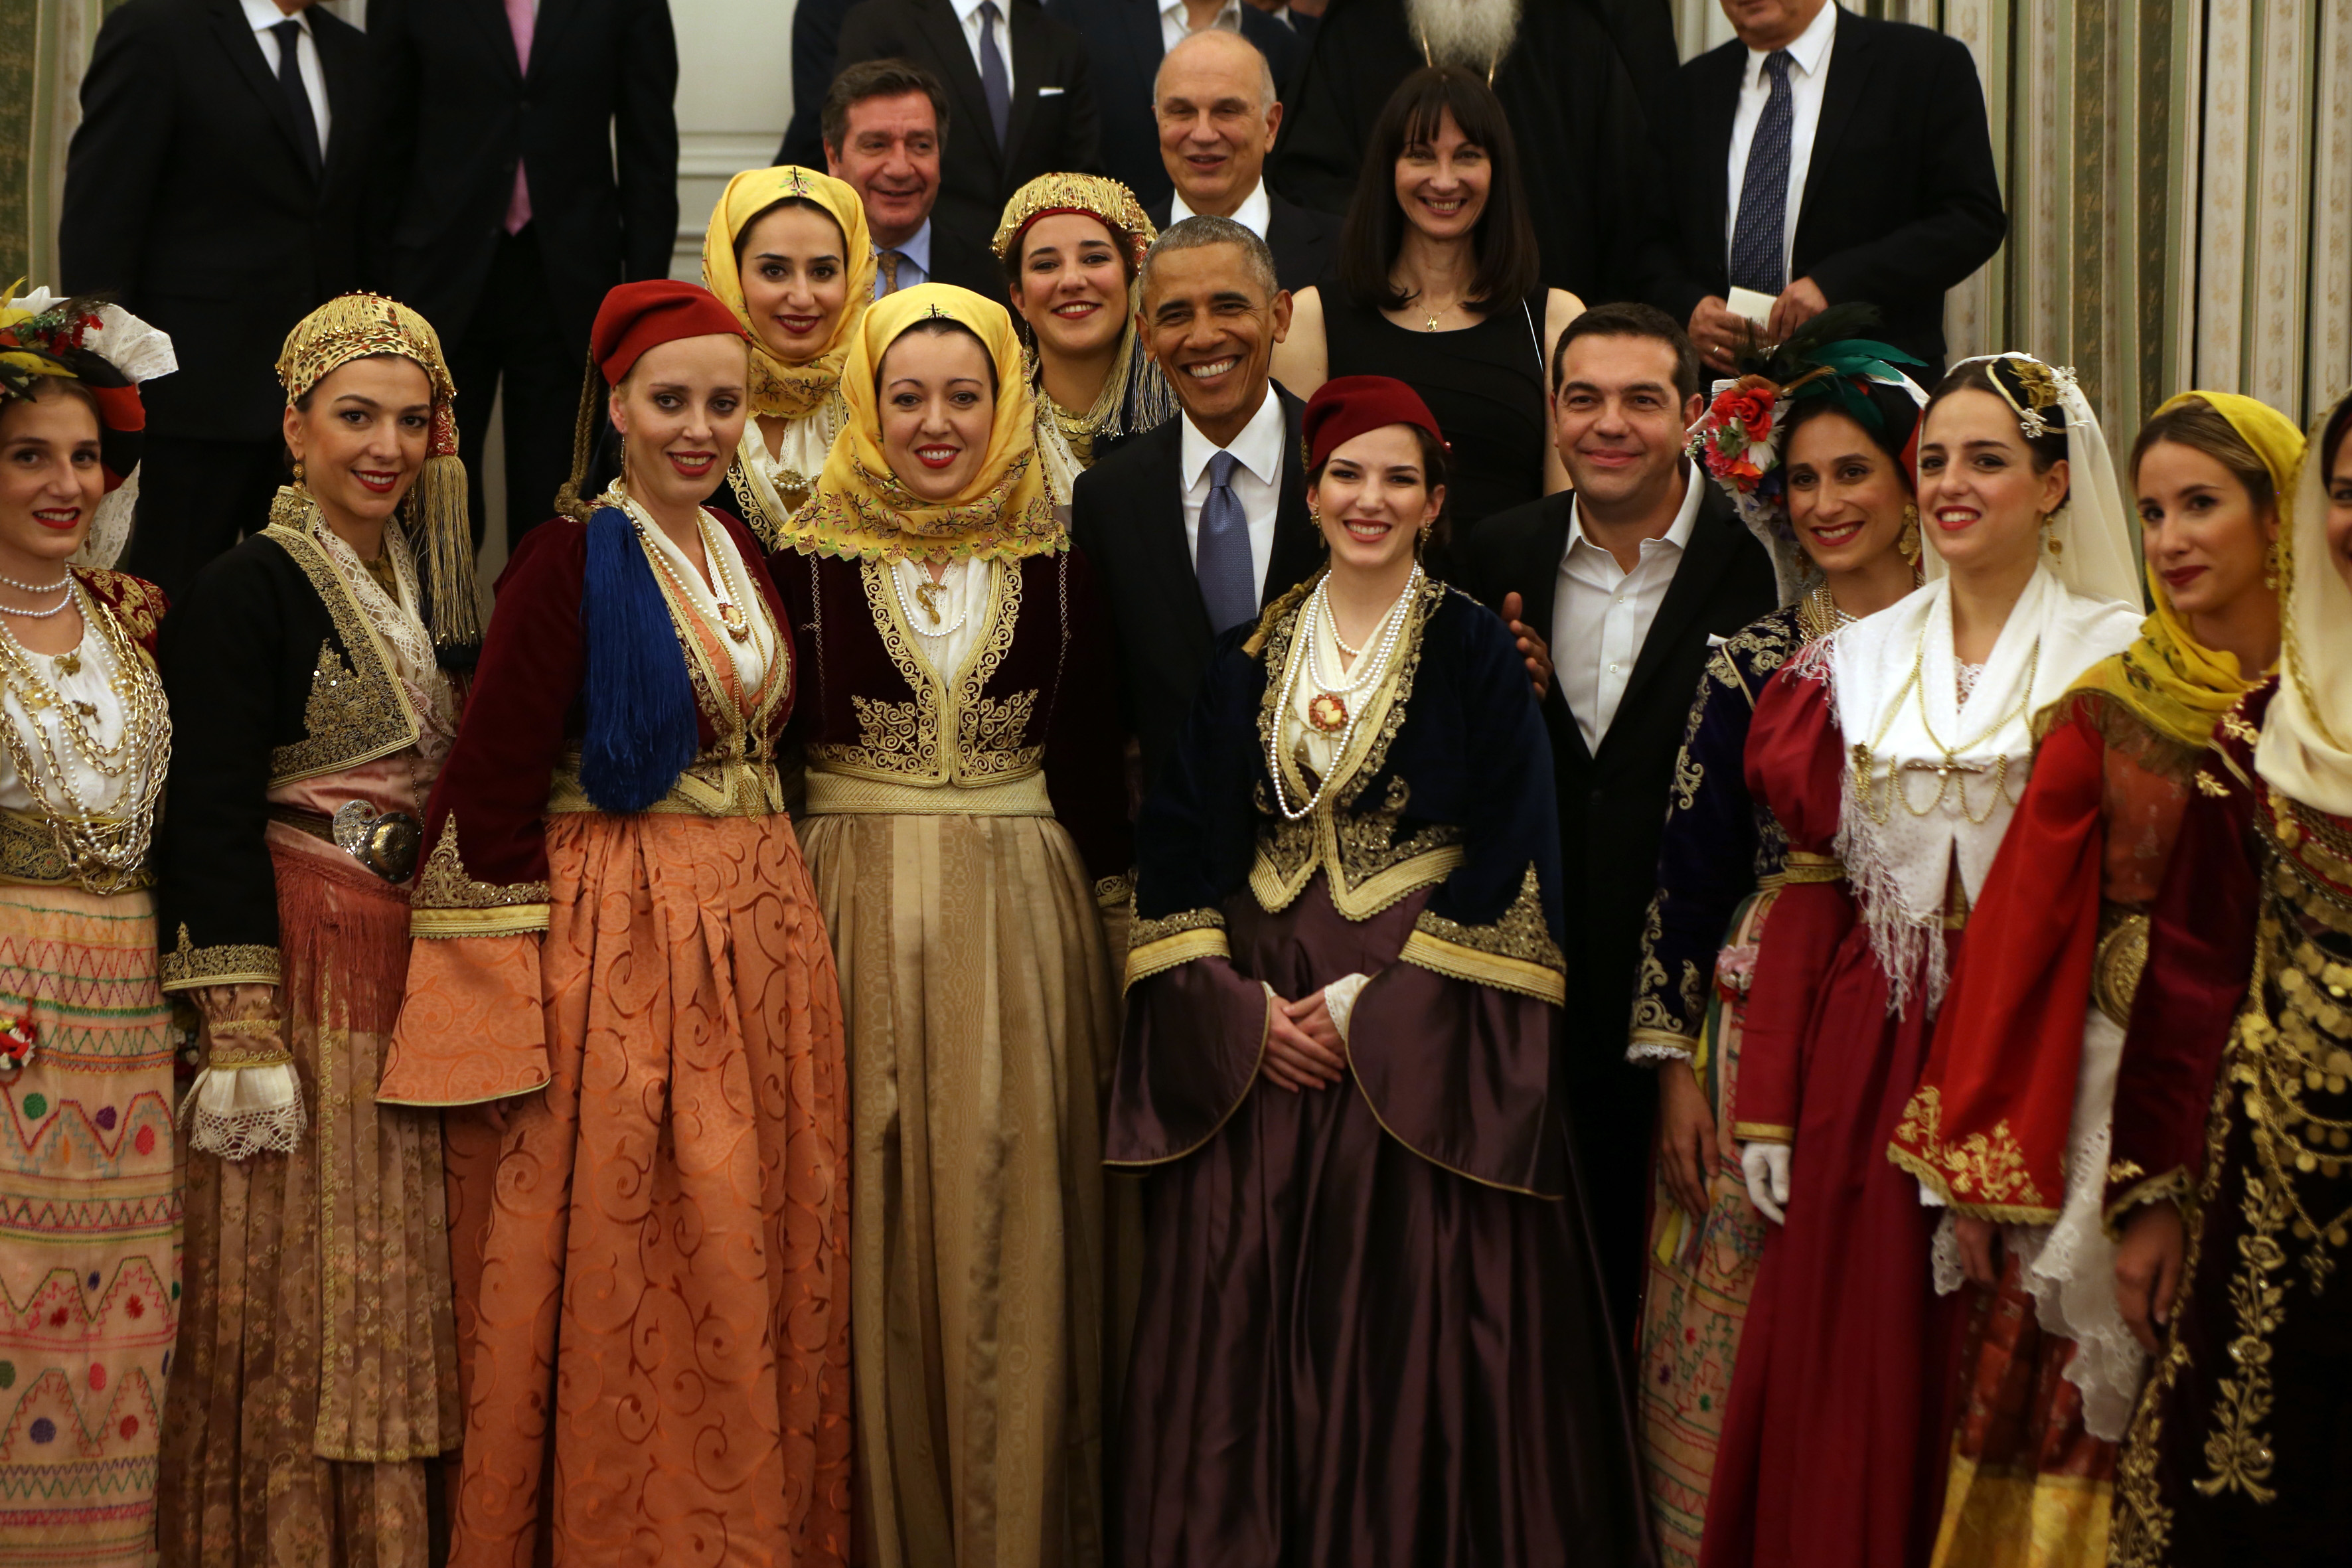 Με ποιους φωτογραφήθηκε ο Μπαράκ Ομπάμα στο δείπνο στο Προεδρικό